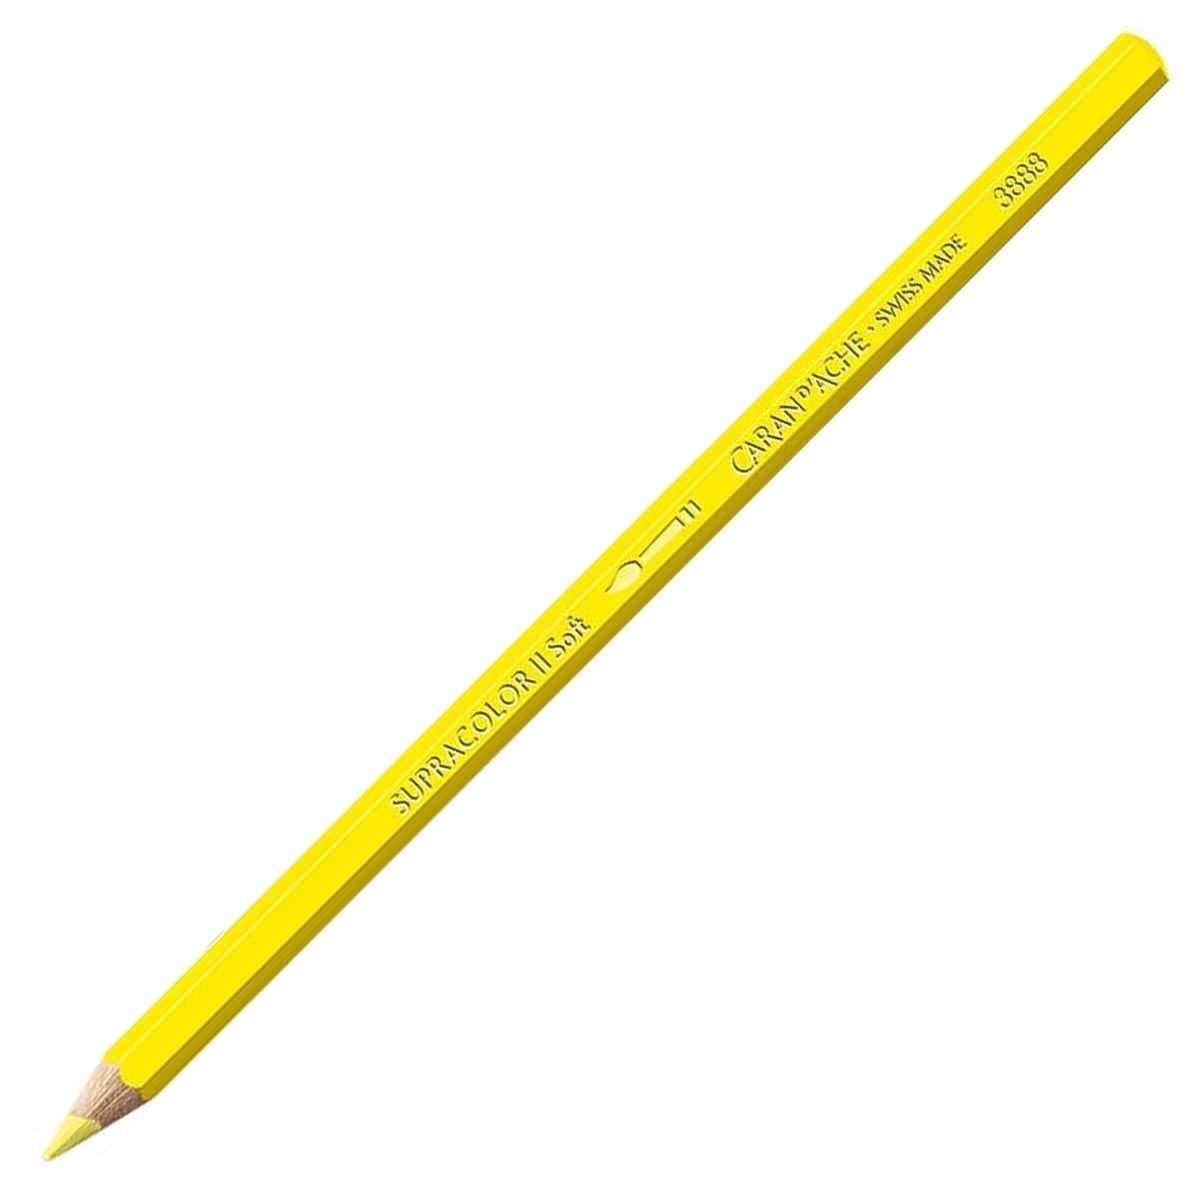 Caran d'Ache Supracolor ll Soft Aquarelle Pencil - Canary Yellow 250